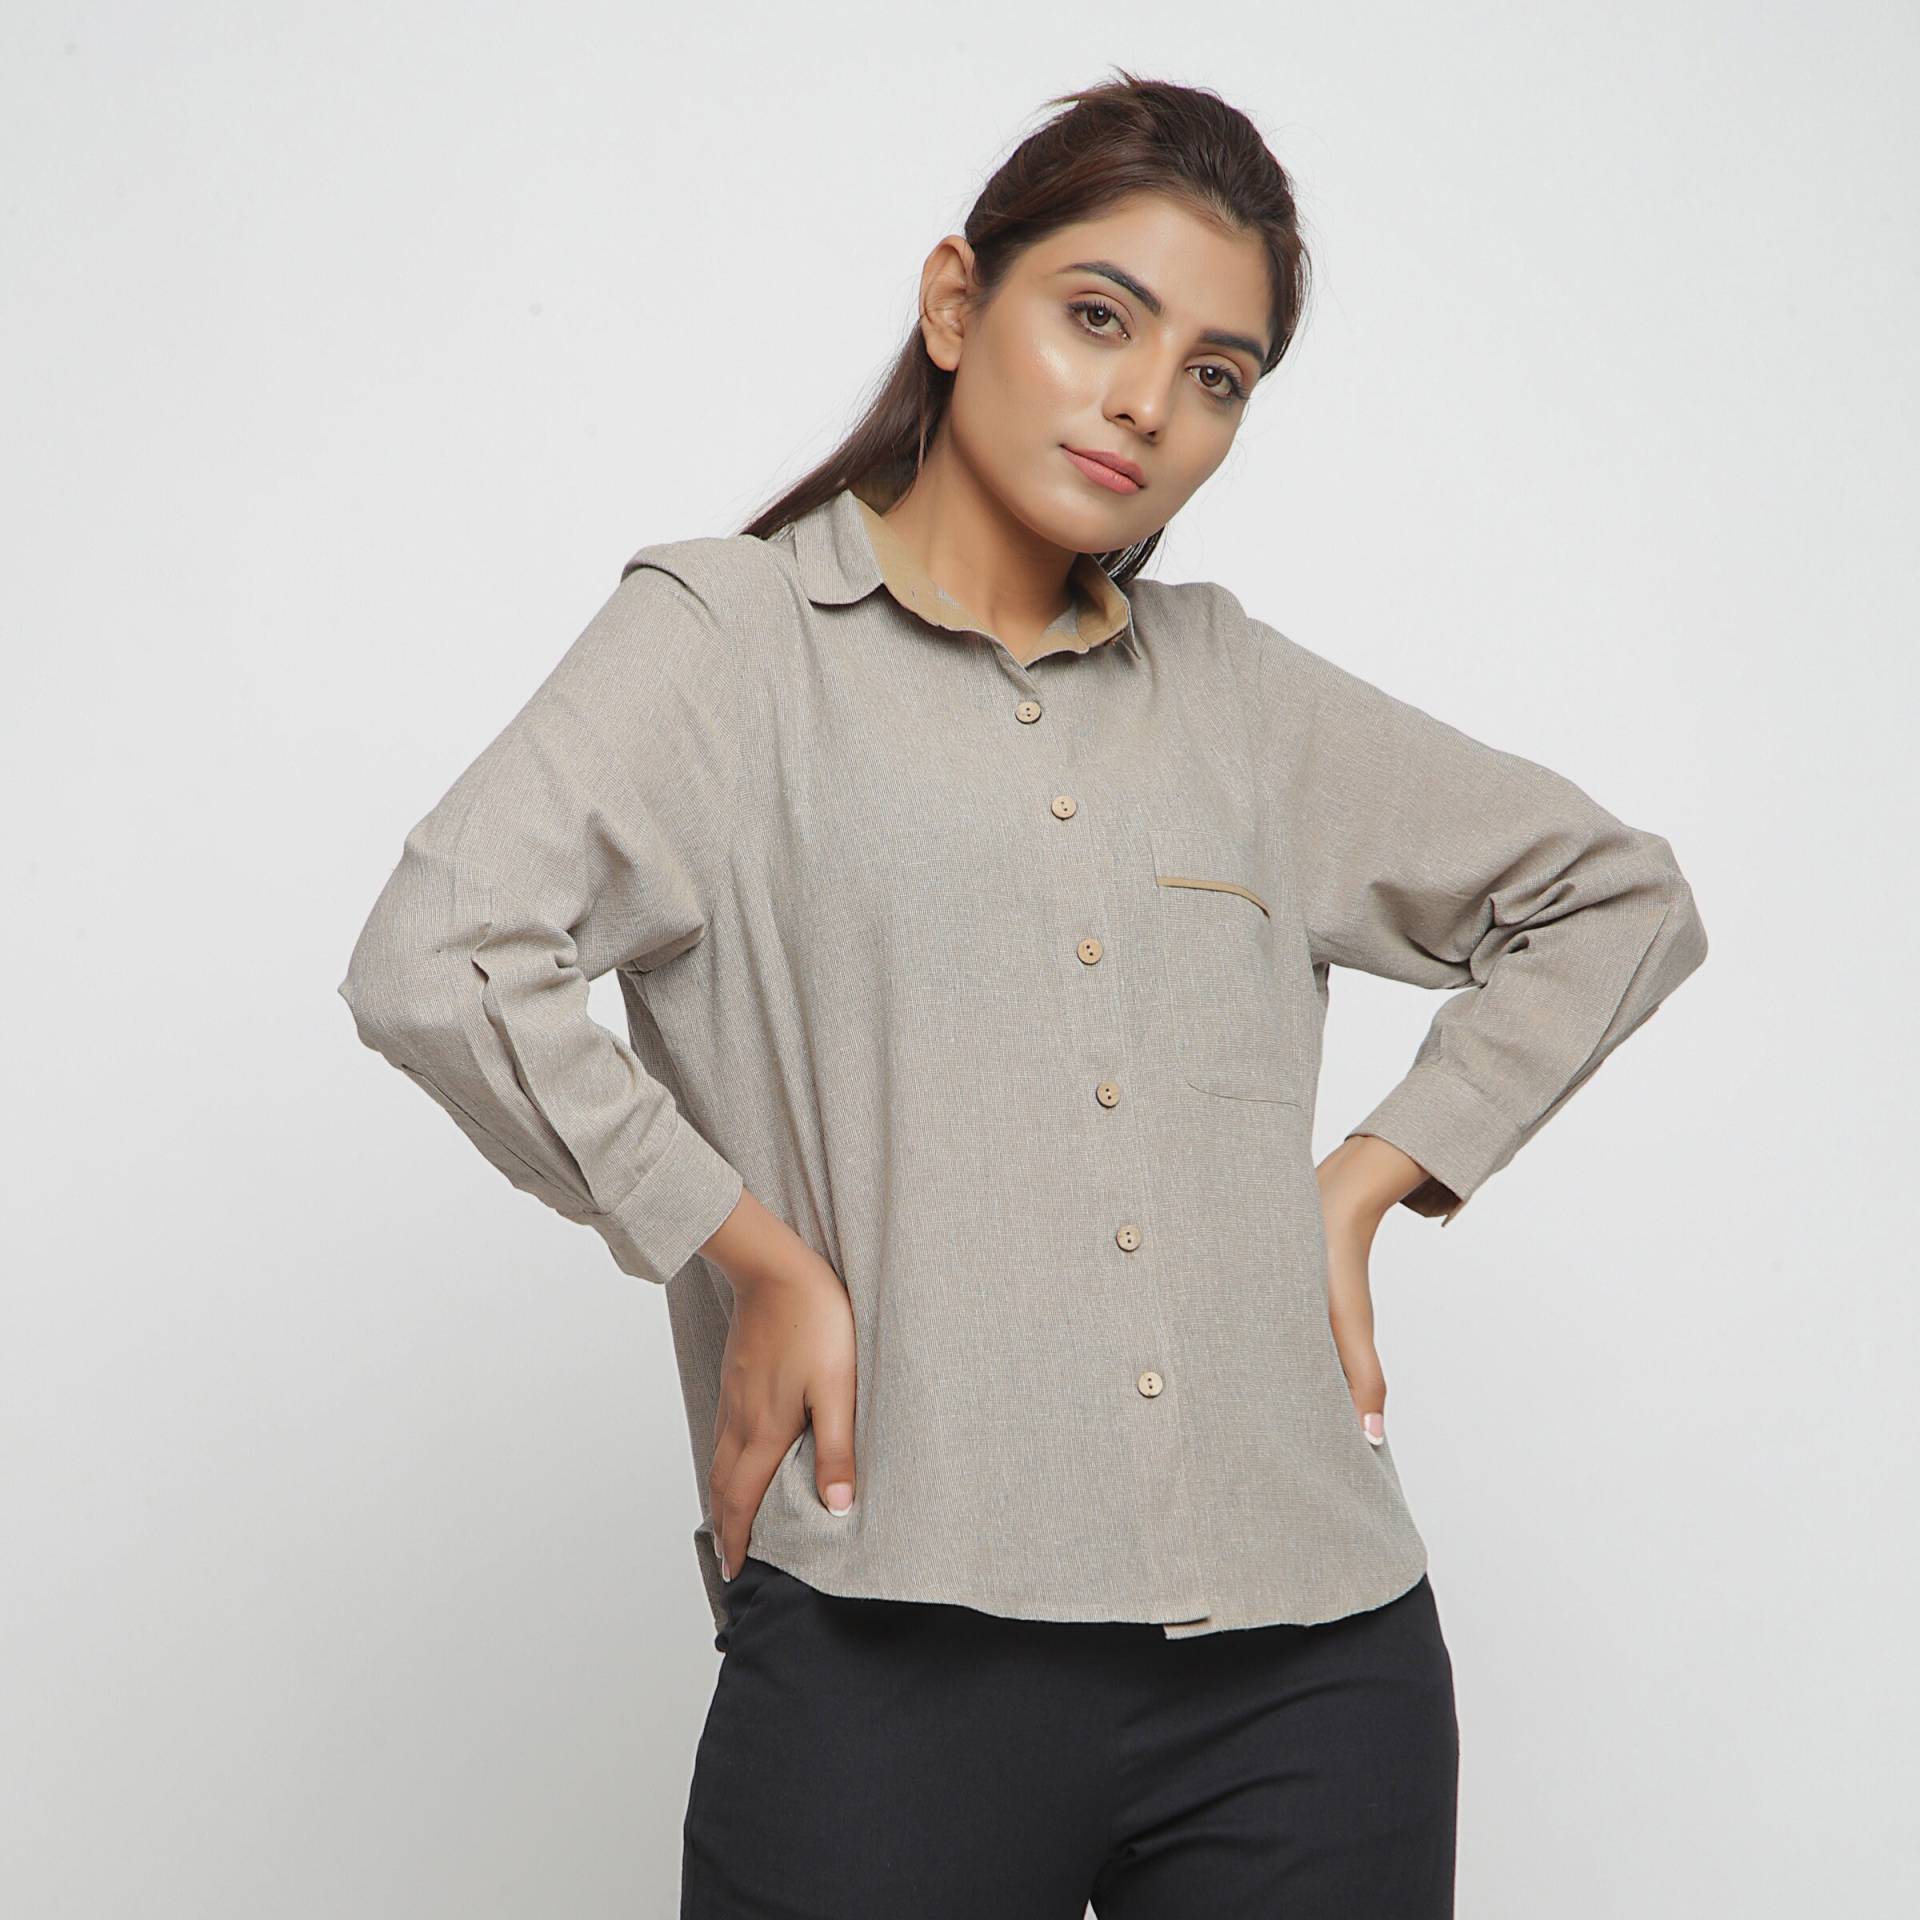 Beige 100% Baumwolle Shirt Top, Anpassbares Top Für Frauen, Button-Down Vollarm Etsw von SeamsFriendlyIndia